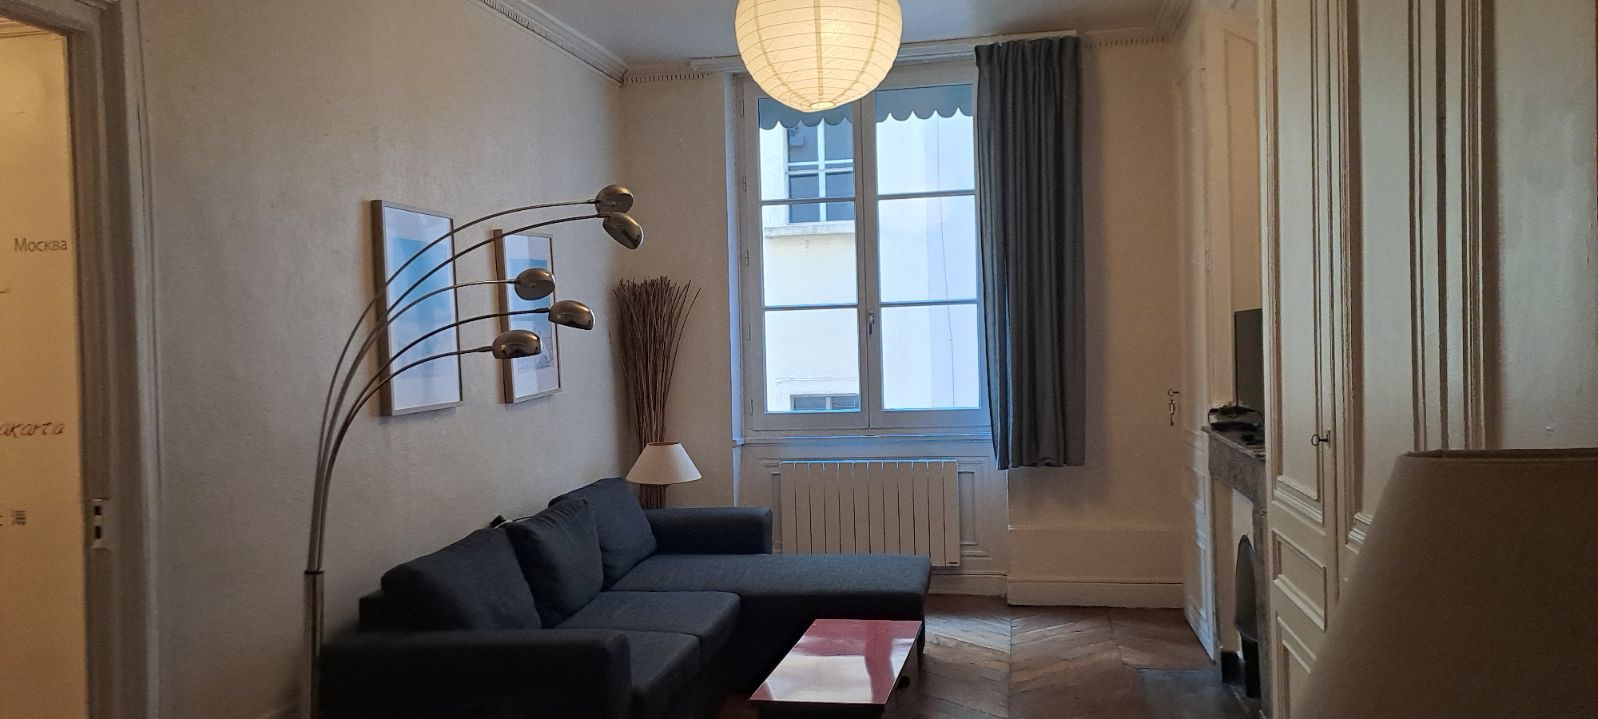 Vente Appartement 51m² 2 Pièces à Lyon (69001) - D-Habitat